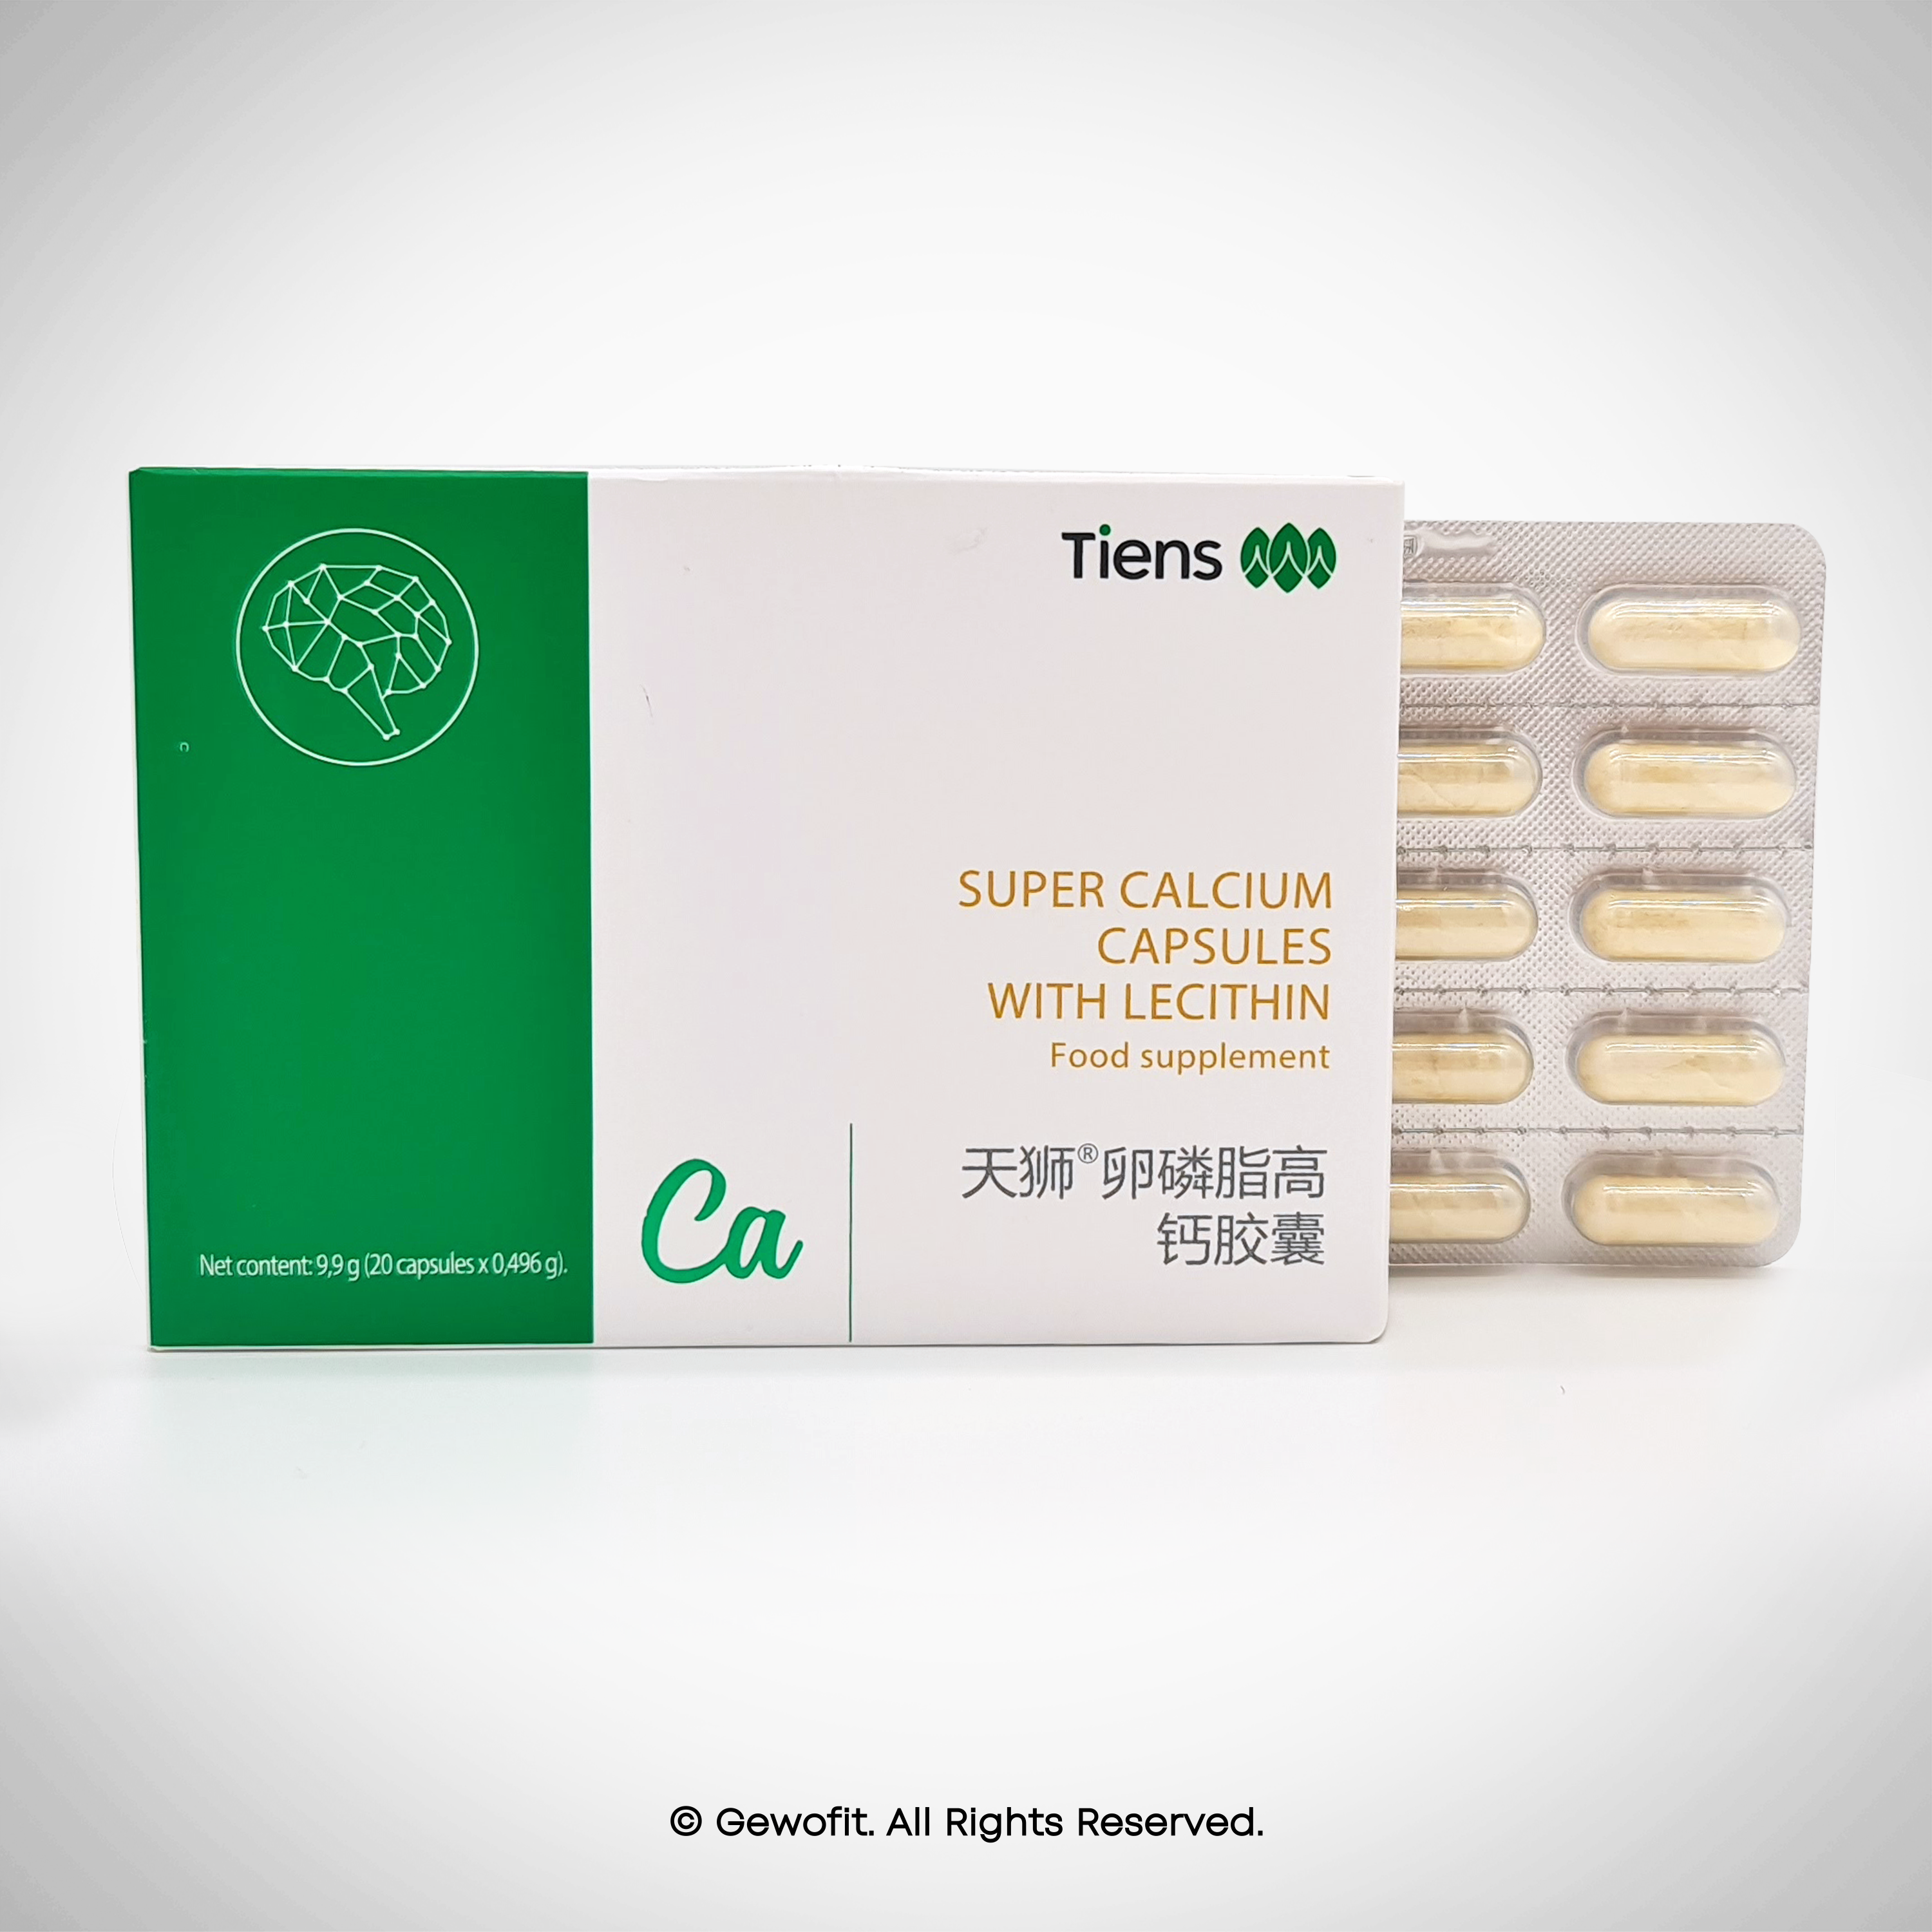 TIENS Calcium Capsules With Lecithin